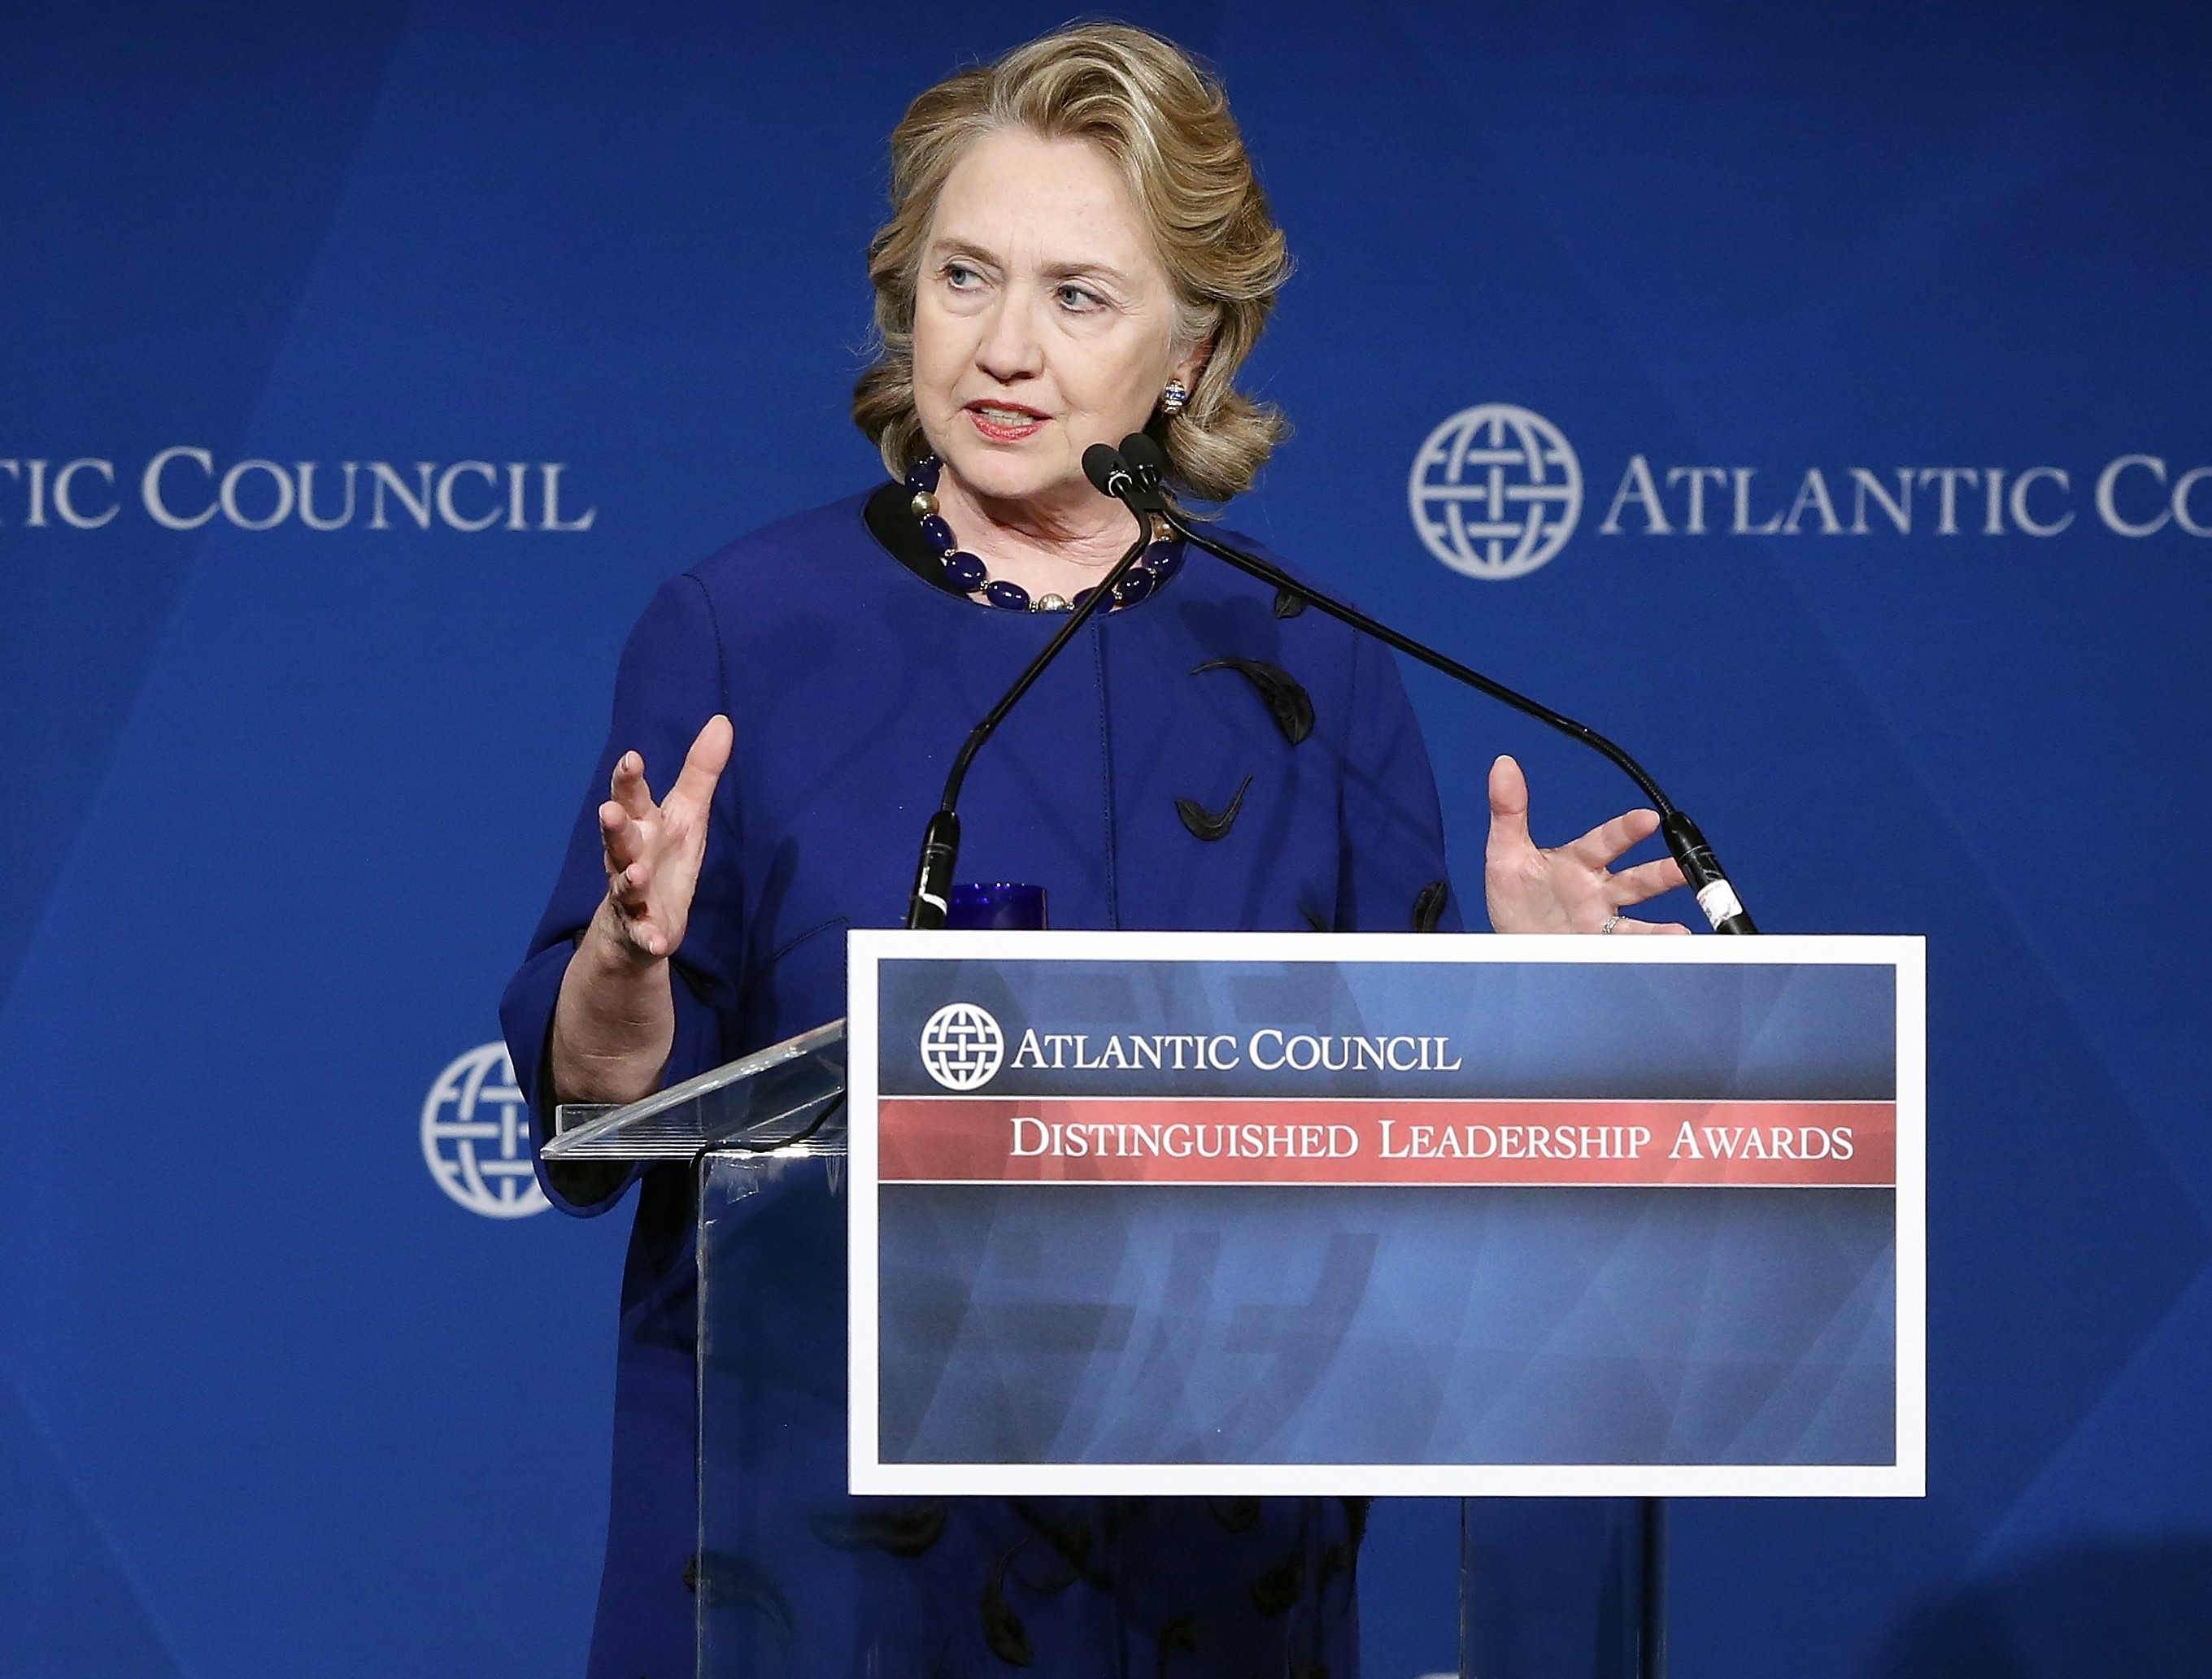 Клинтън: Америка е незаменима и изключителна! Всички виждат в нас лидер